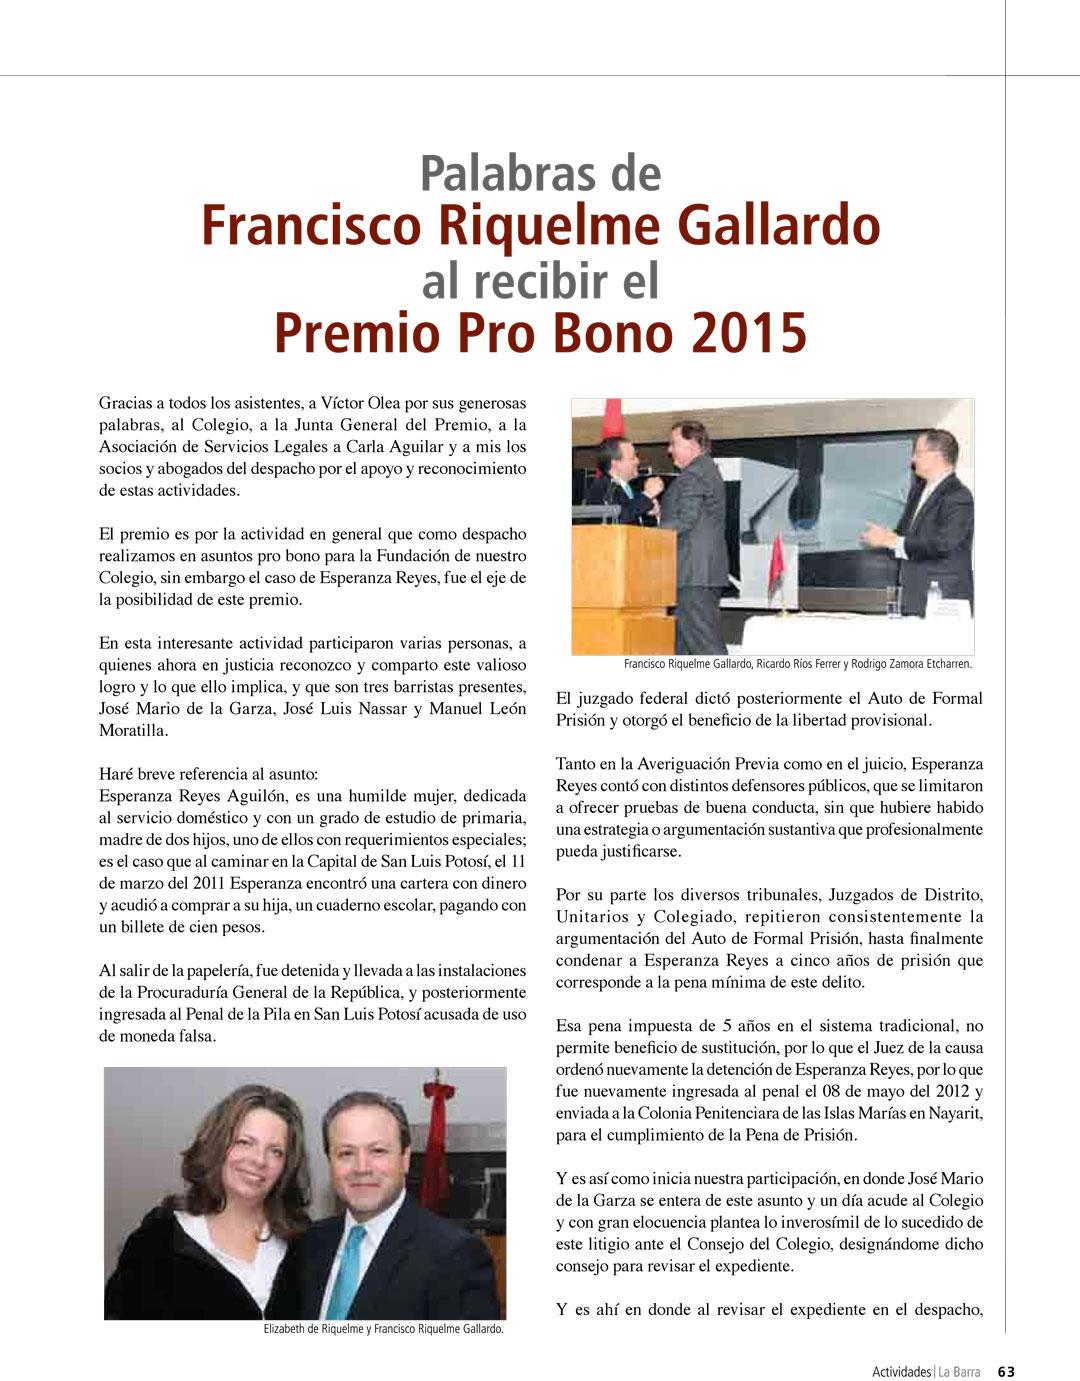 Premio Pro Bono Francisco Riquelme Gallardo Barra Mexicana de Abogados